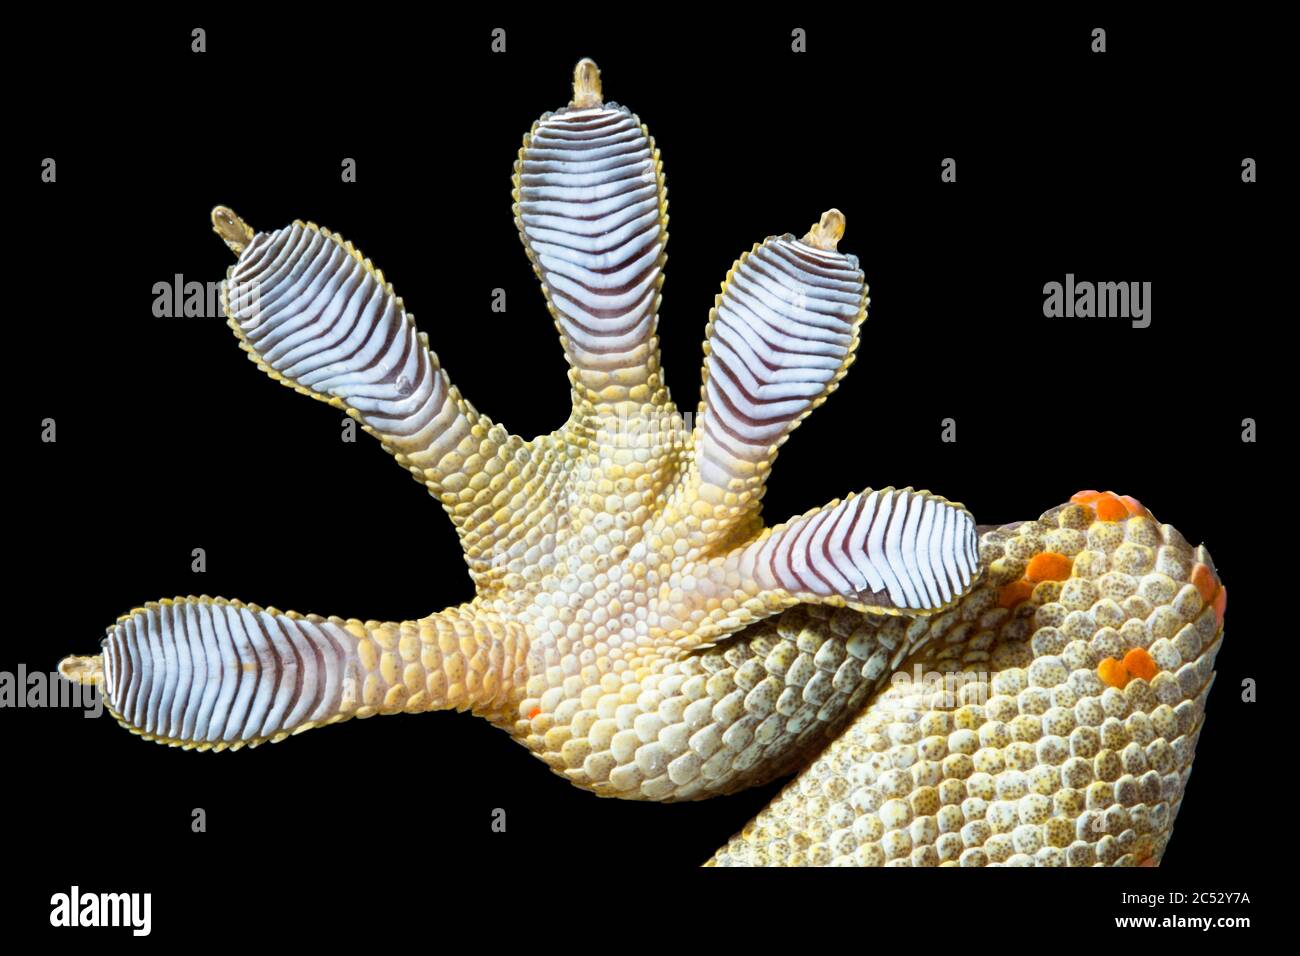 Primo piano di un piede di Gecko della Spotted House Foto Stock